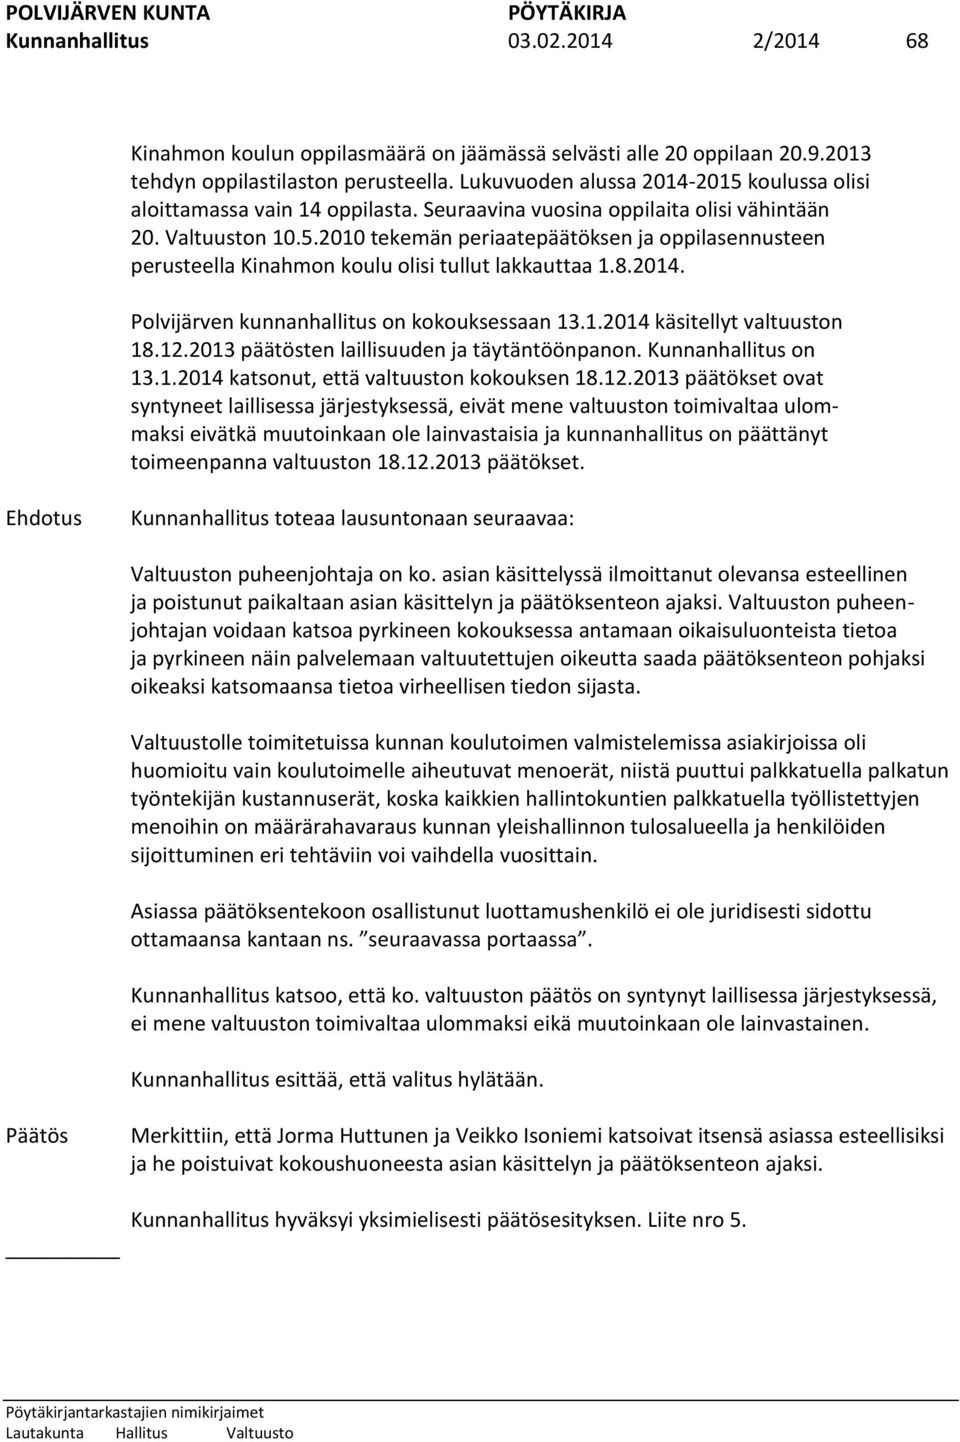 8.2014. Polvijärven kunnanhallitus on kokouksessaan 13.1.2014 käsitellyt valtuuston 18.12.2013 päätösten laillisuuden ja täytäntöönpanon. Kunnanhallitus on 13.1.2014 katsonut, että valtuuston kokouksen 18.